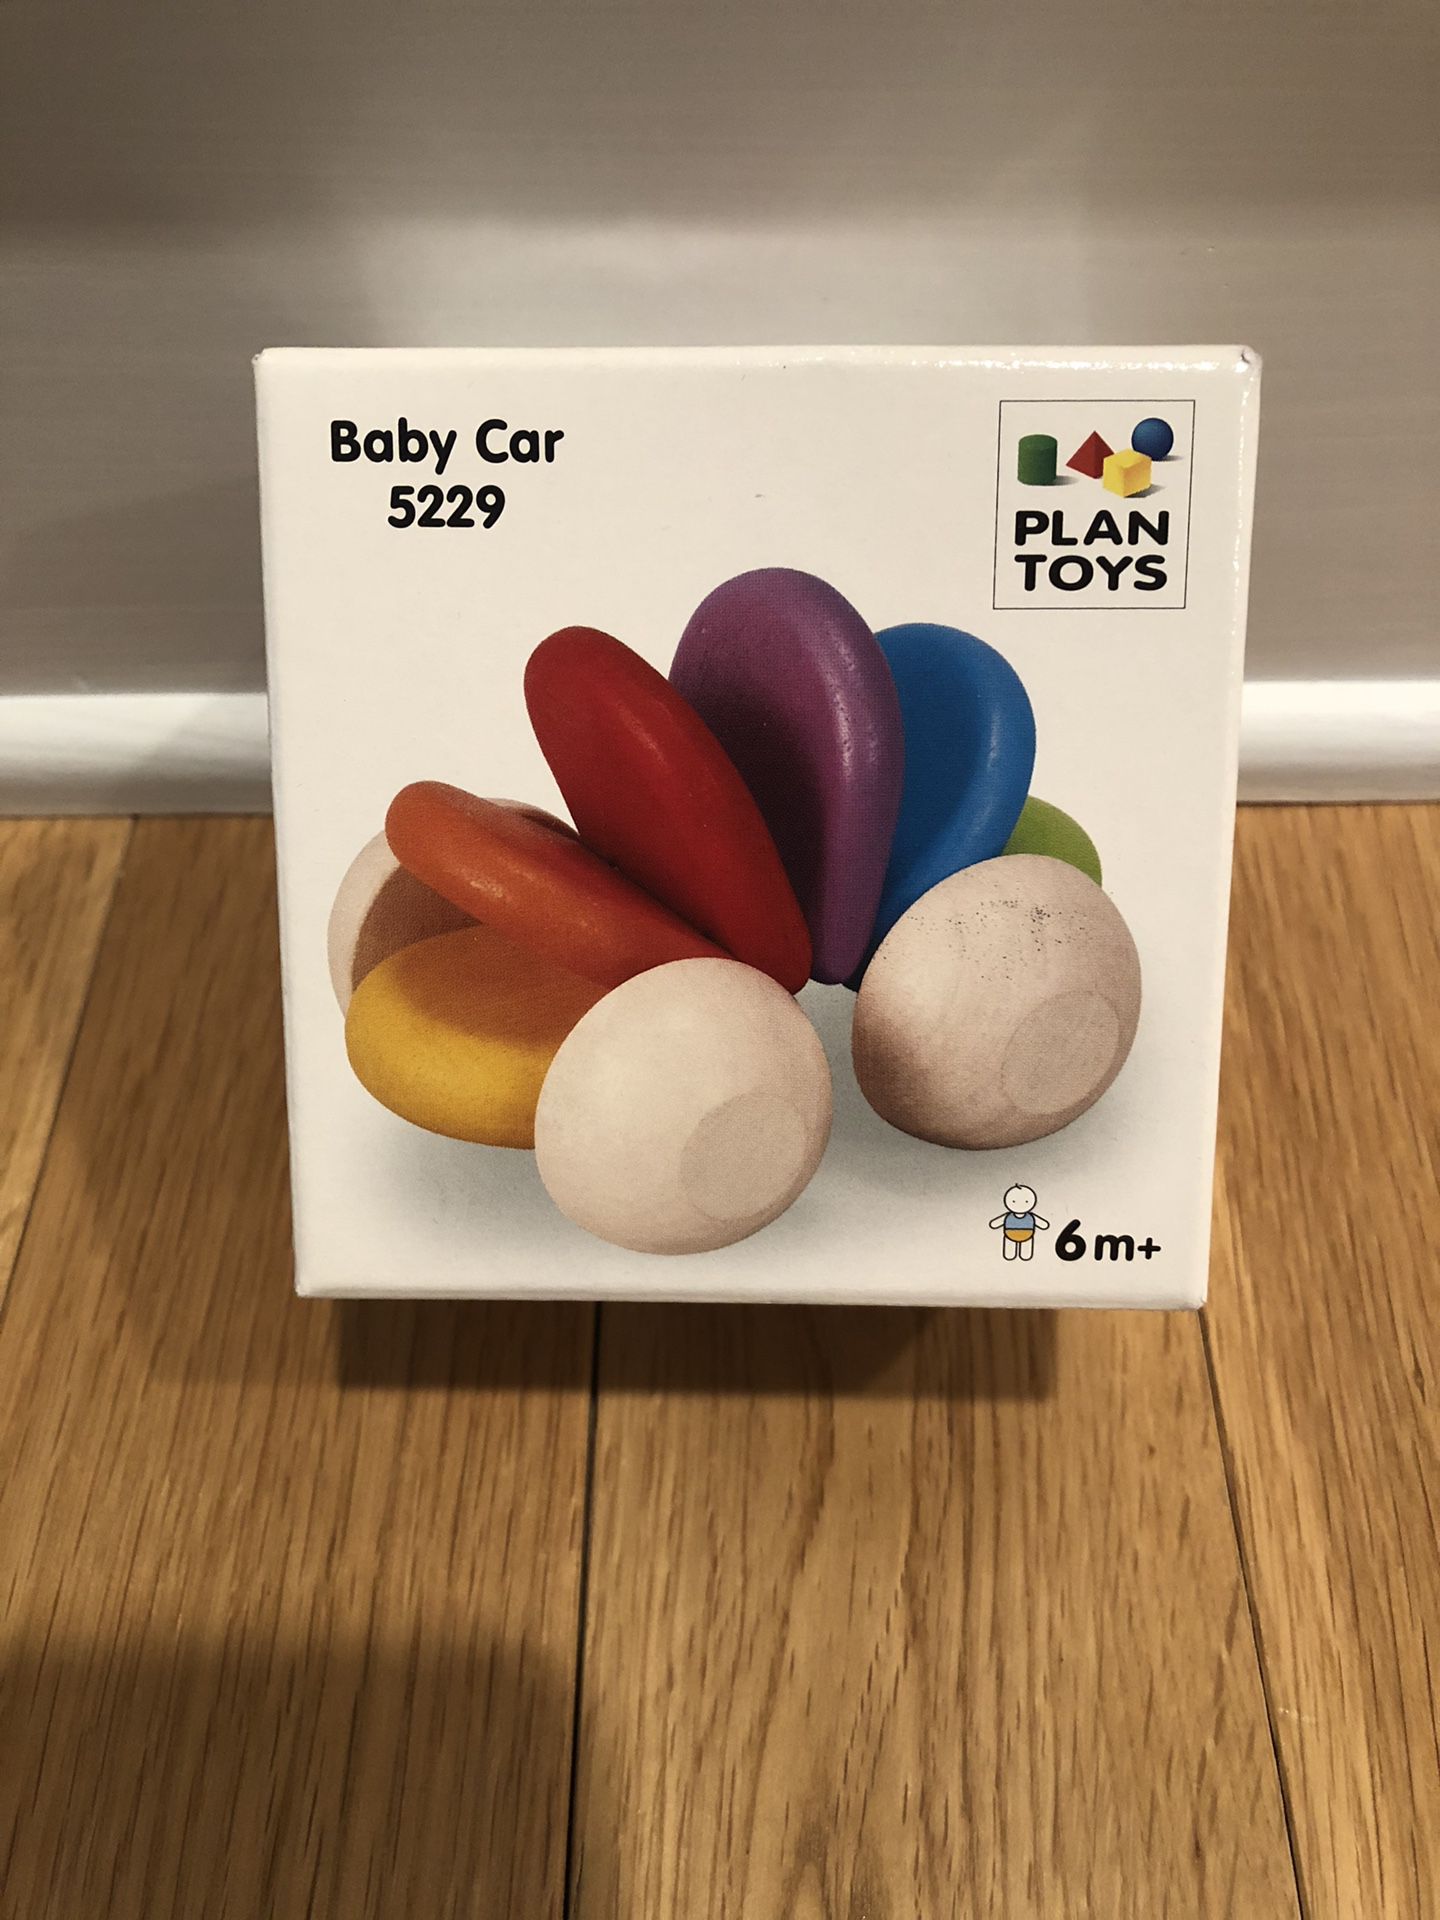 Plan Toys Baby Car UNOPENED BOX